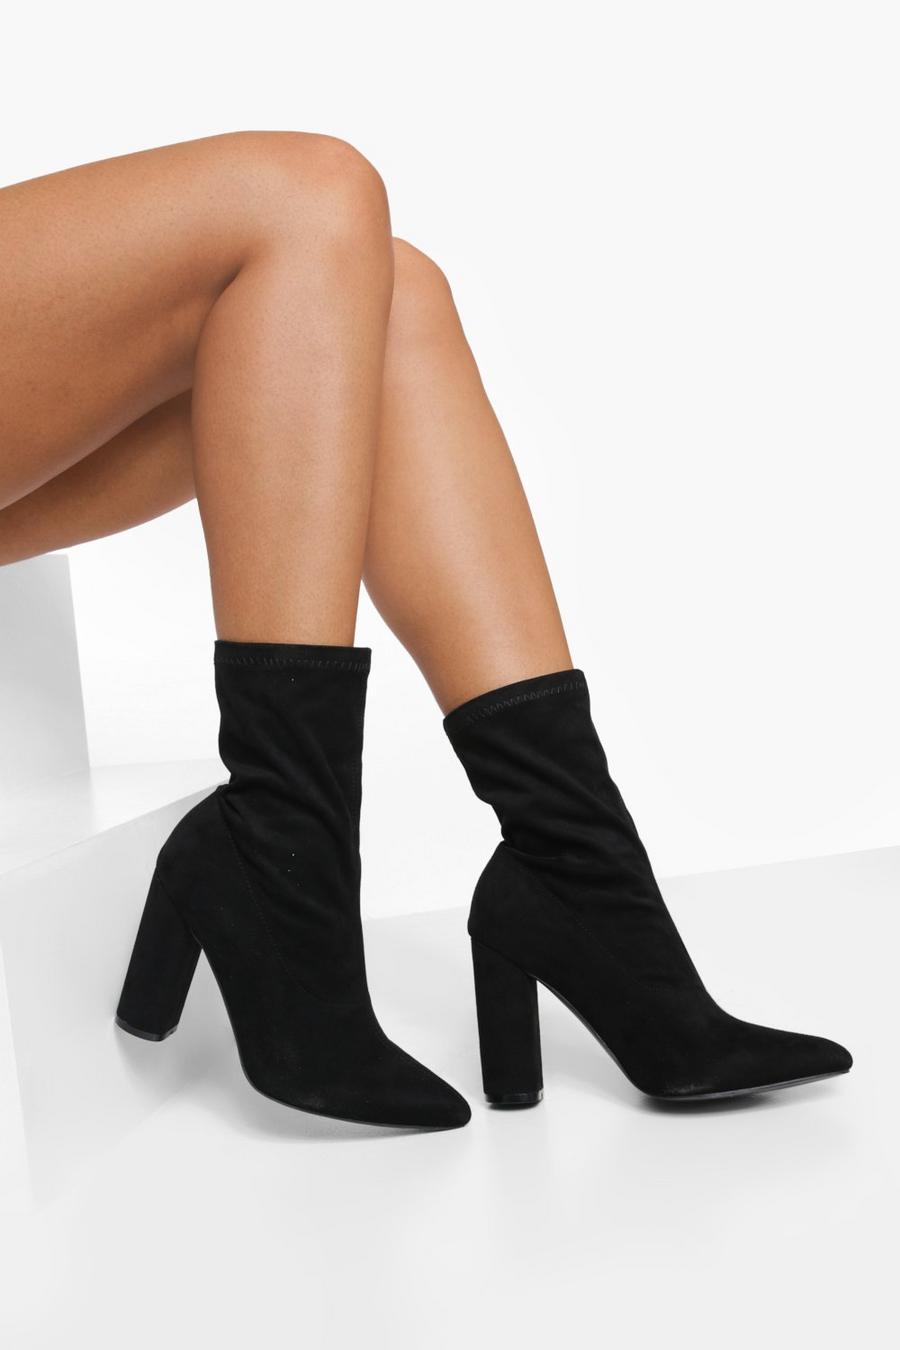 Botas calcetín de holgura ancha con punta de pico y tacón grueso, Black nero